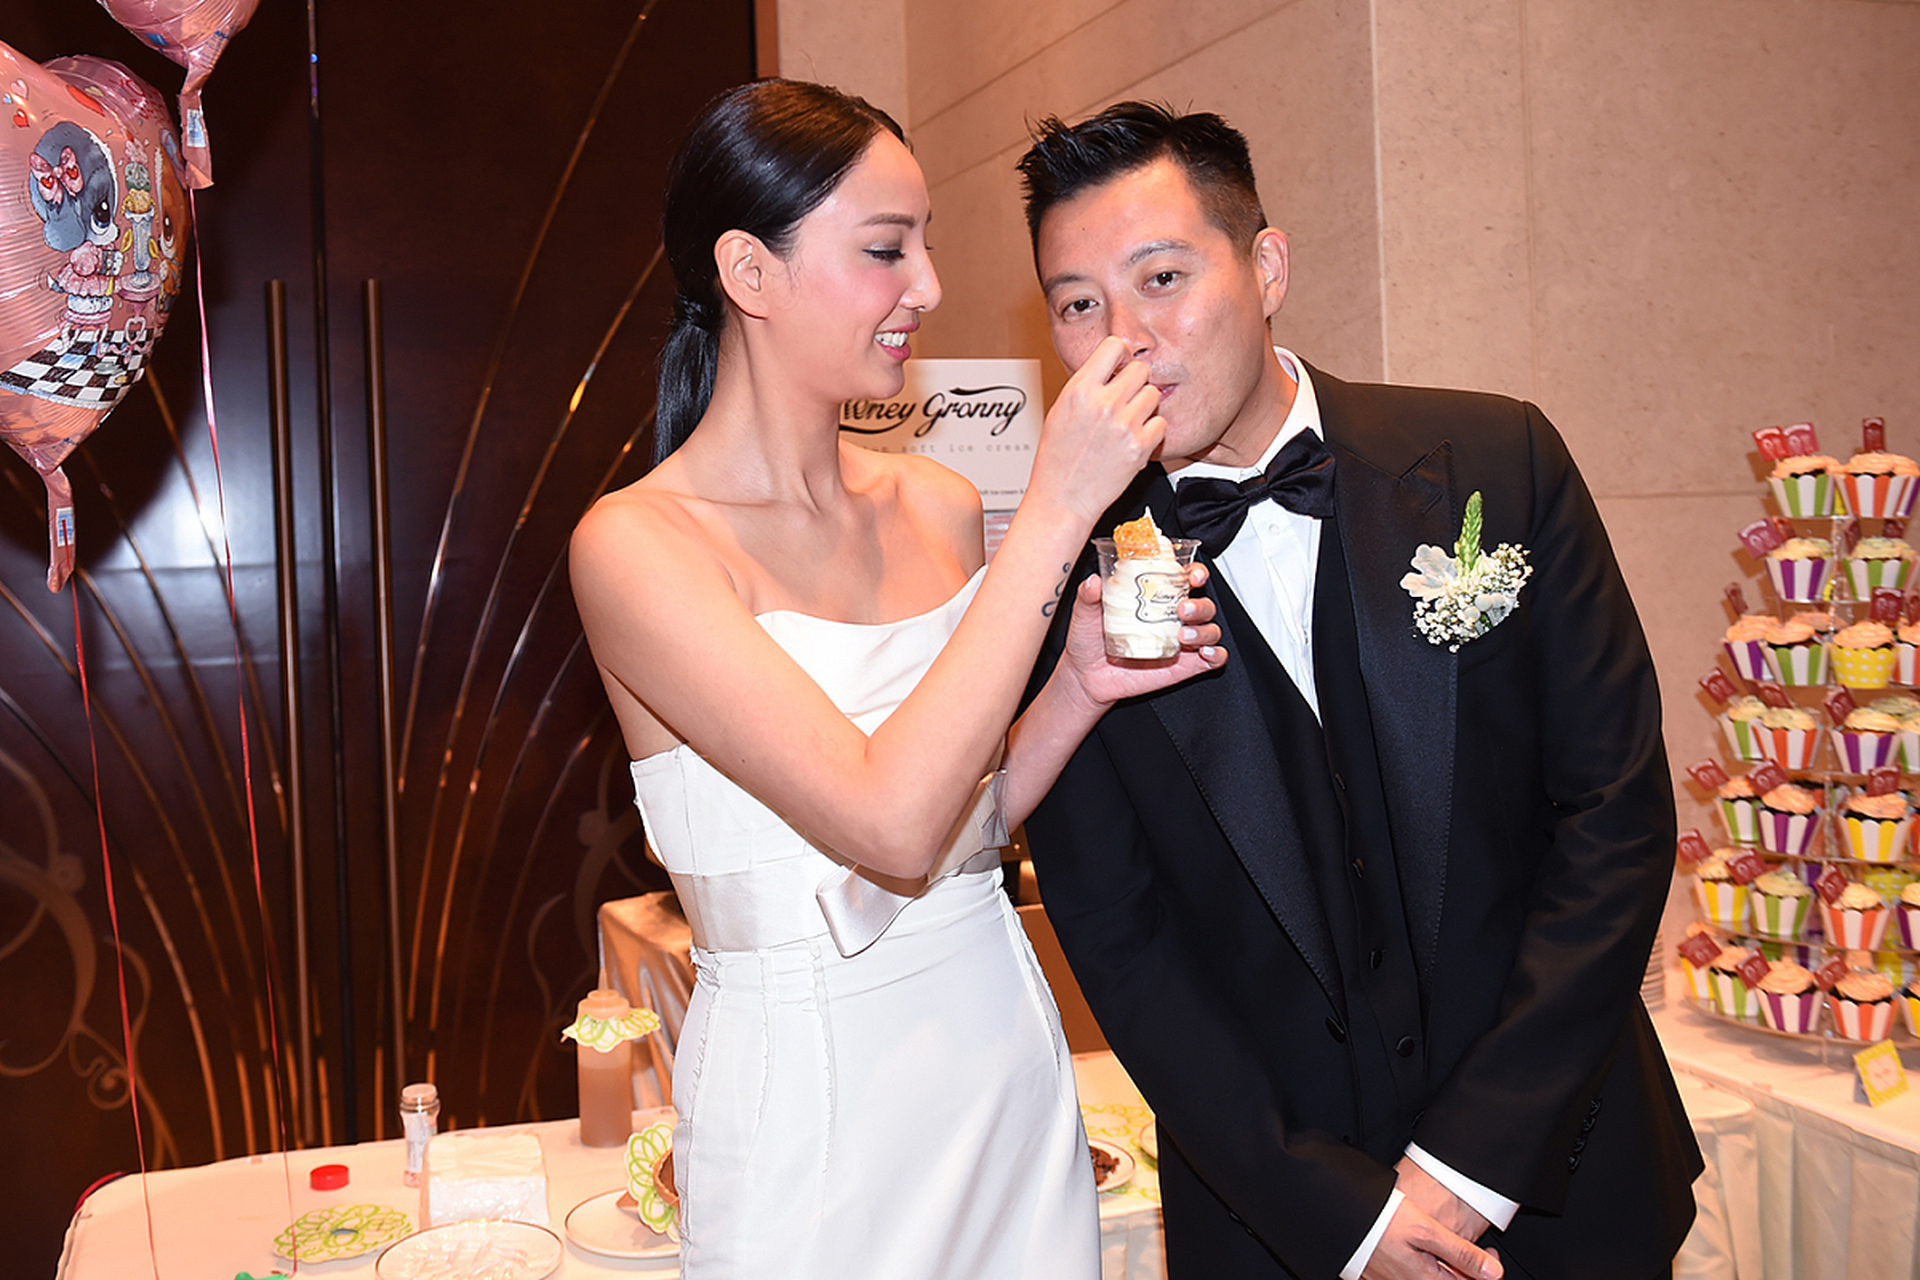 11月22日晚间,郑希怡发文庆祝自己结婚十周年,她表示自己与老公结婚